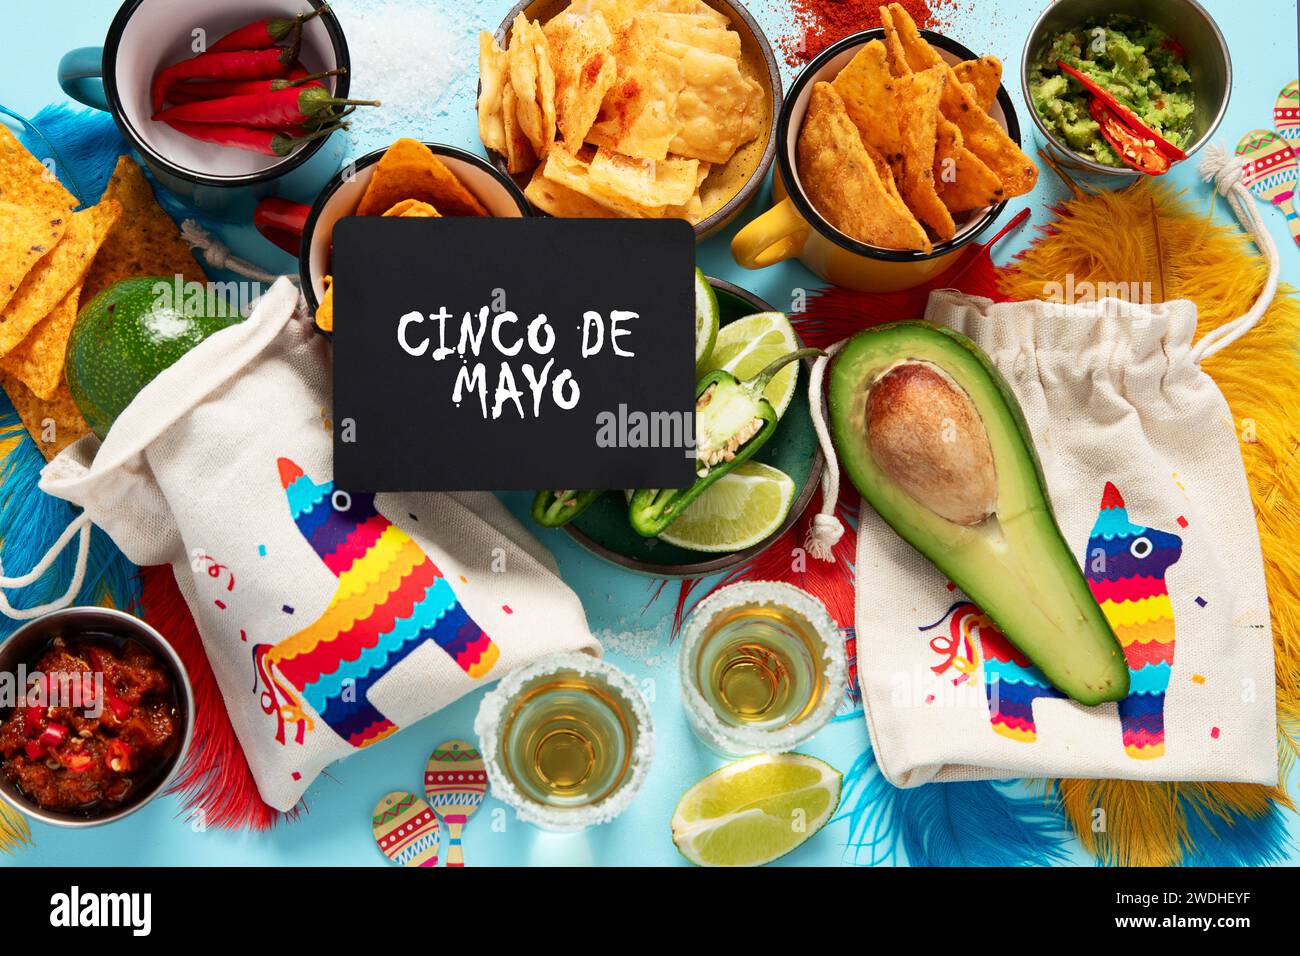 Concept Cinco-de-mayo. Nourriture traditionnelle nacho chips sauce salsa tequila Chili avec sel citron vert sombrero serape cactus et maracas sur fond bleu. Banque D'Images